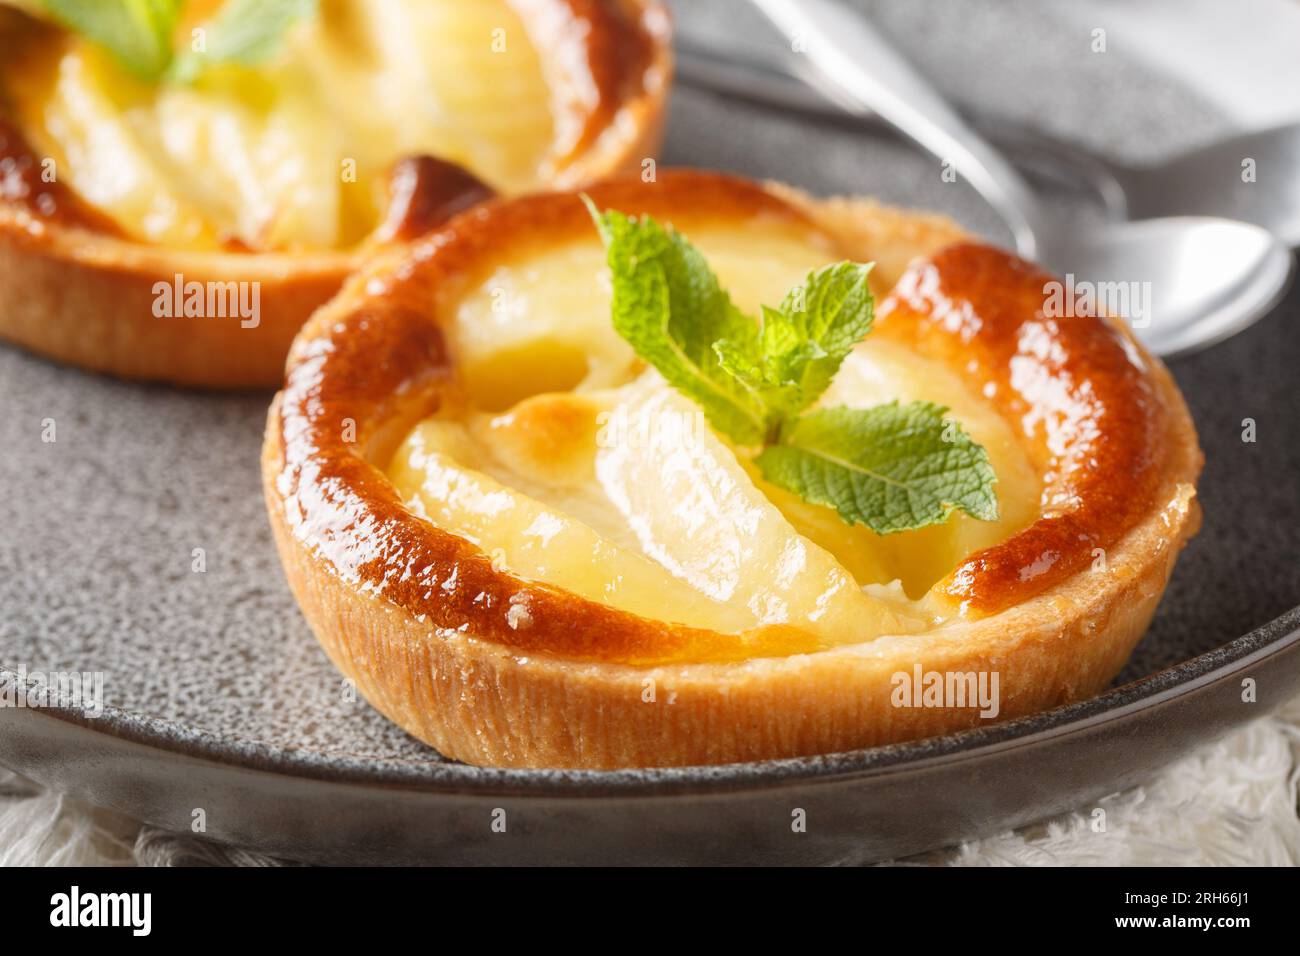 Tartelette aux pommes cuite classique avec crème anglaise et gros plan à la menthe dans une assiette sur la table. Horizontal Banque D'Images